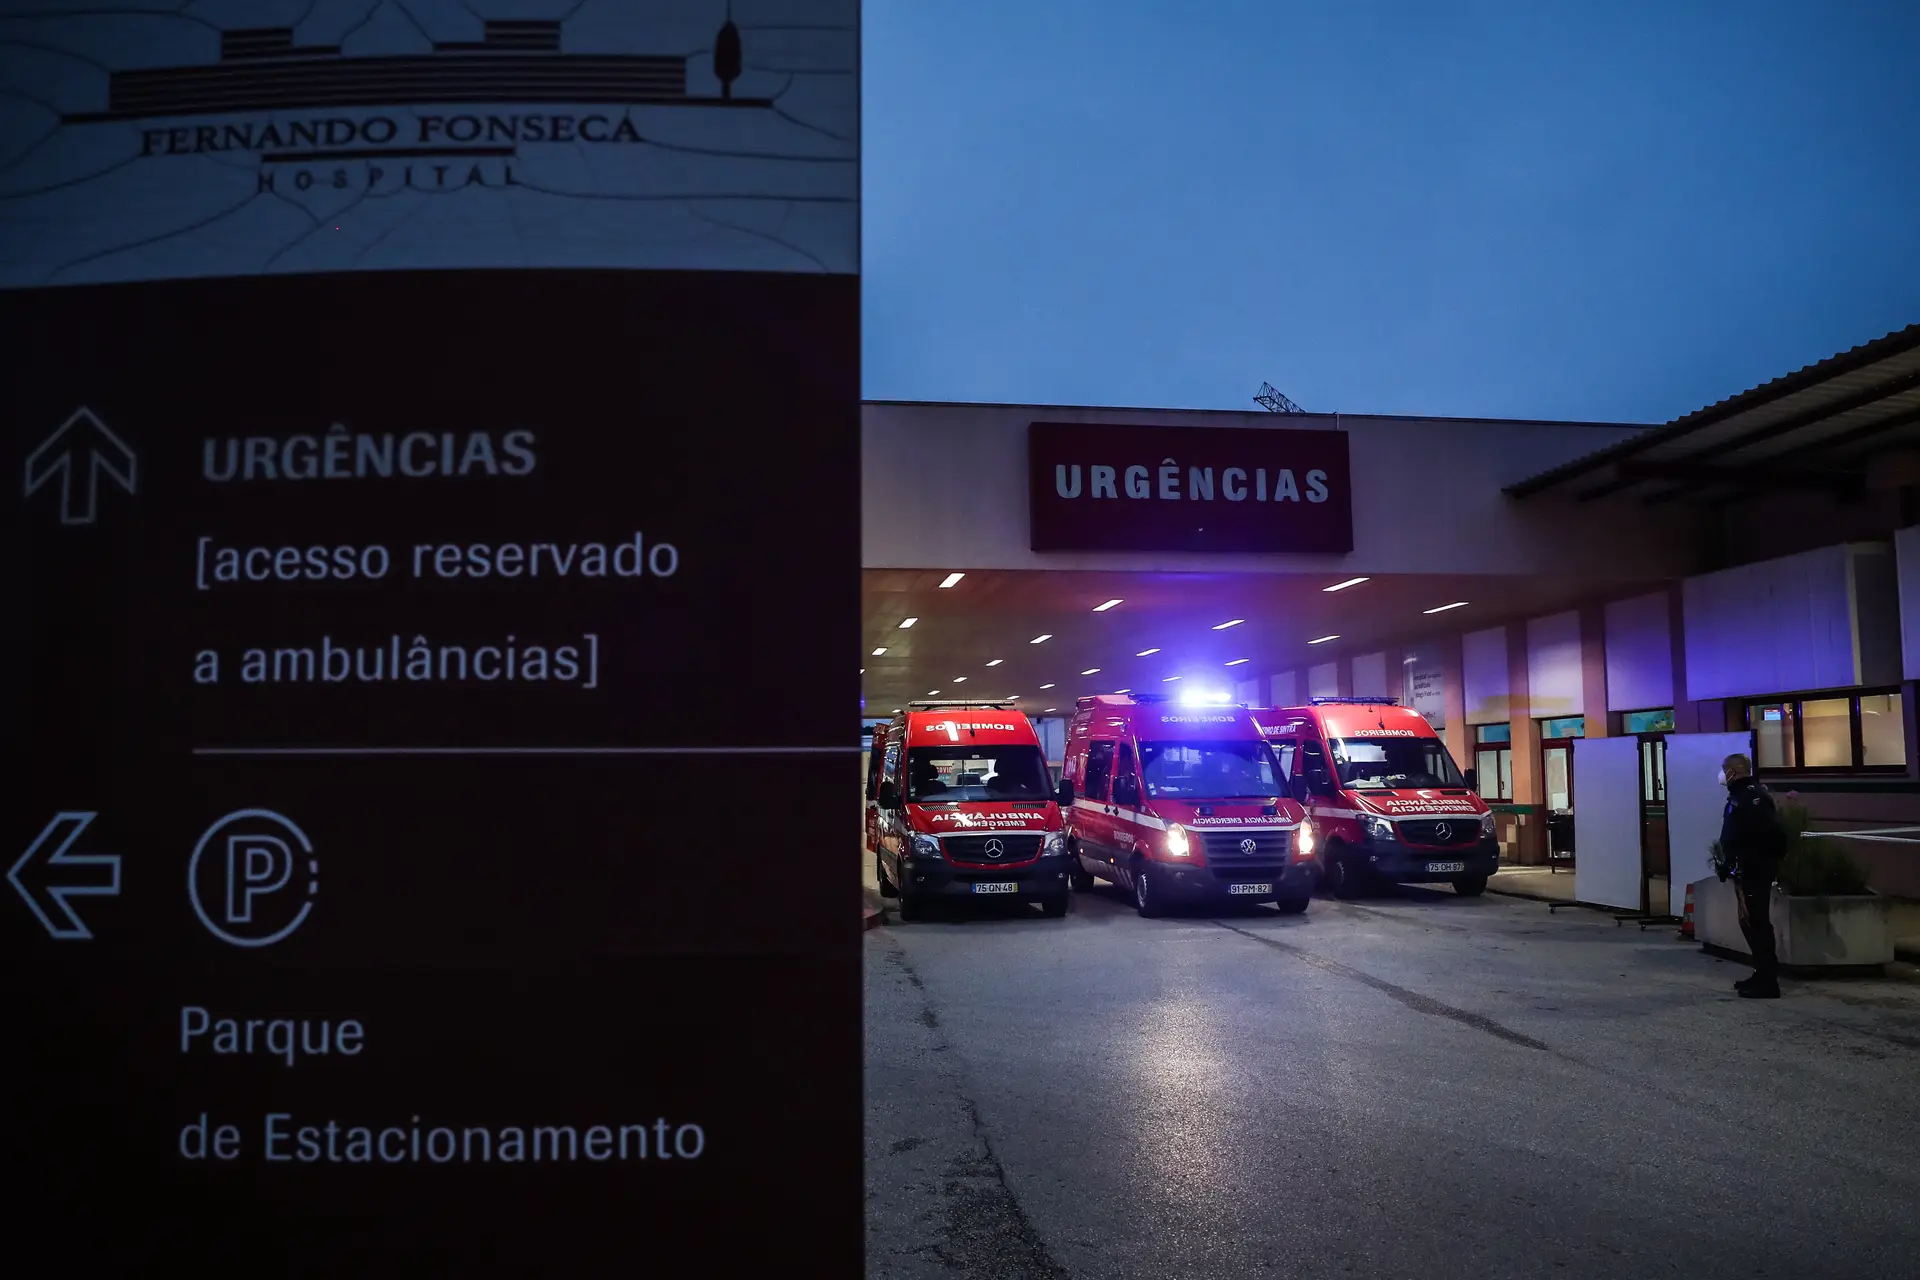 Denúncias no Hospital Amadora-Sintra: Ordem dos Médicos identifica possível má conduta